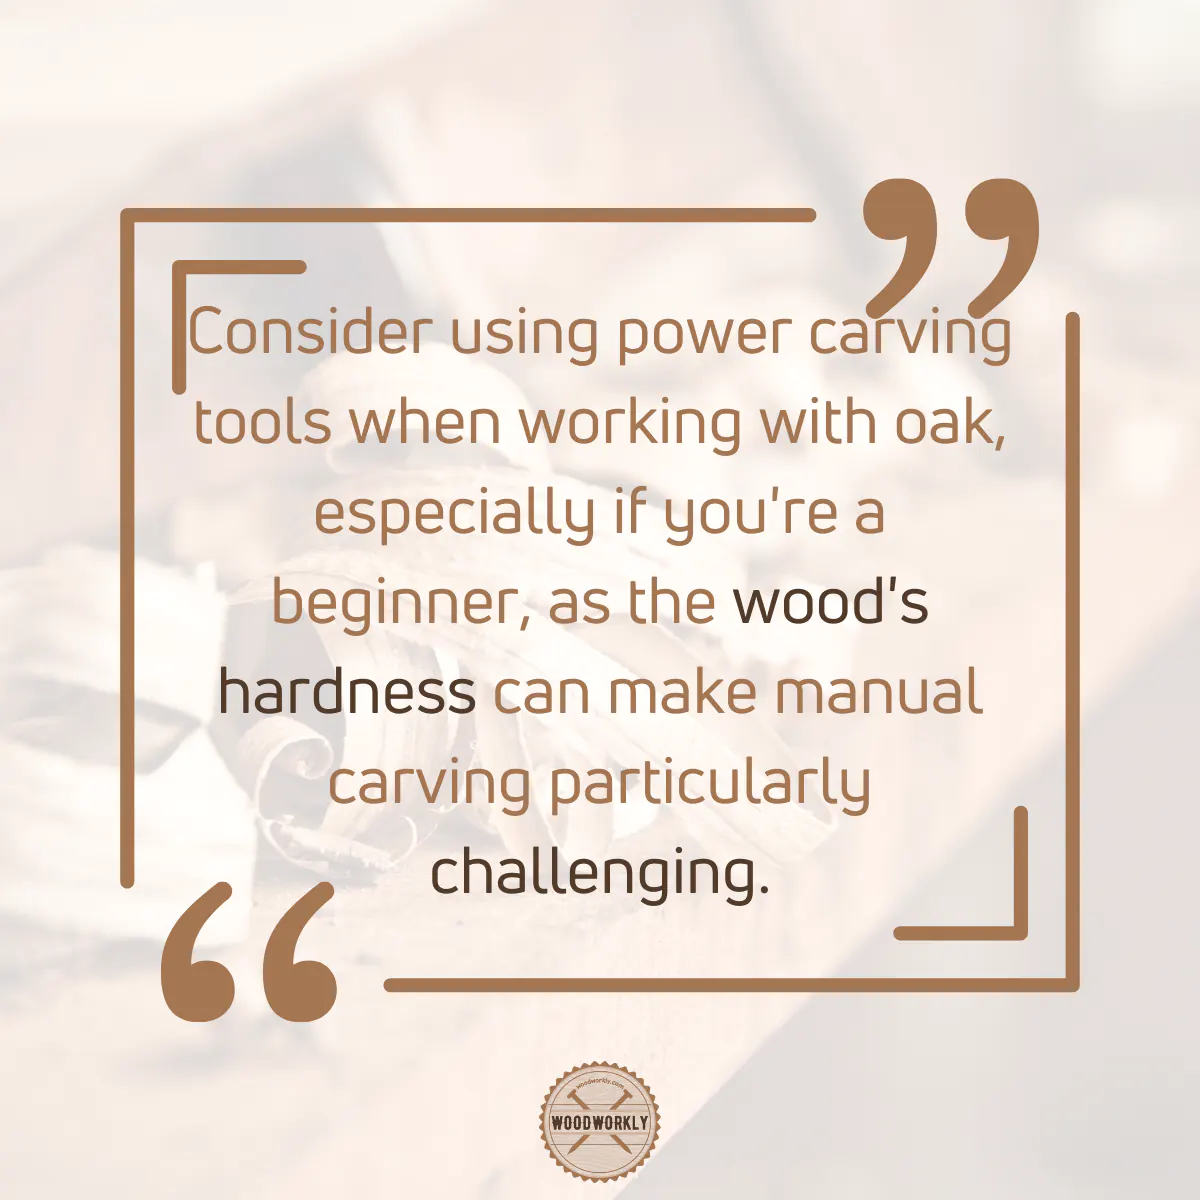 Tip for carving Oak wood